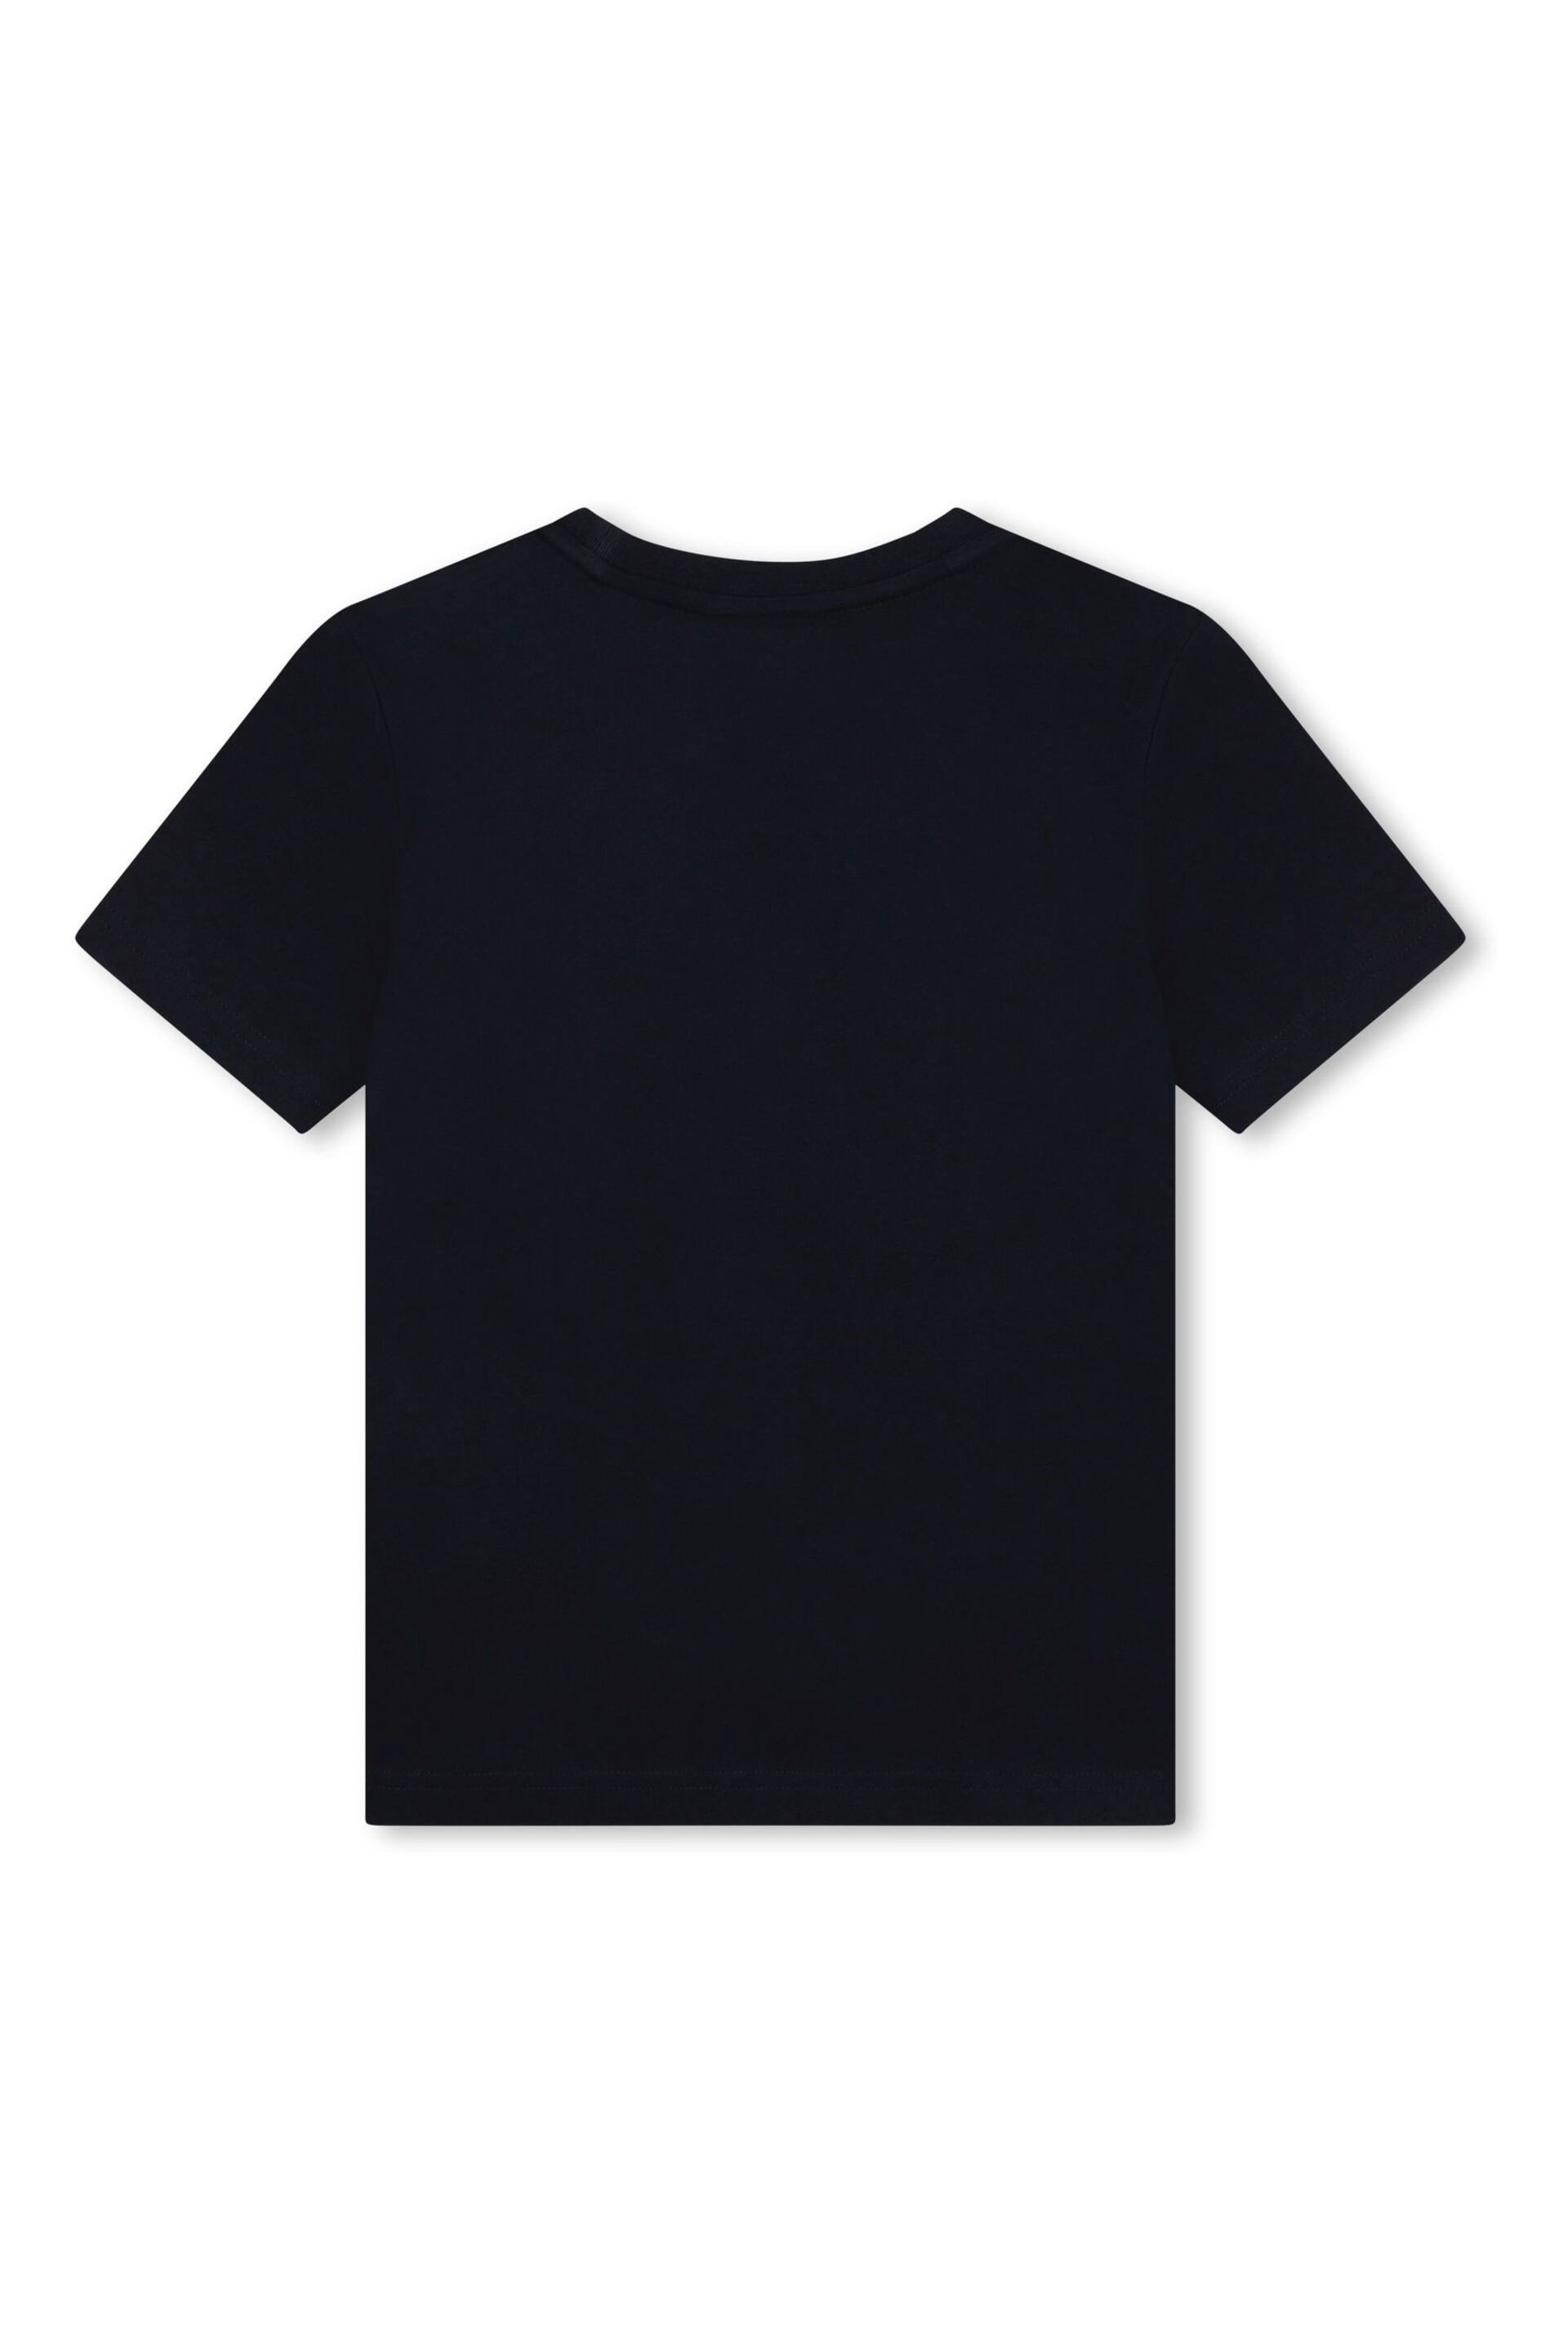 BOSS Dark Navy Blue Short Sleeved Logo T-Shirt - Image 2 of 3